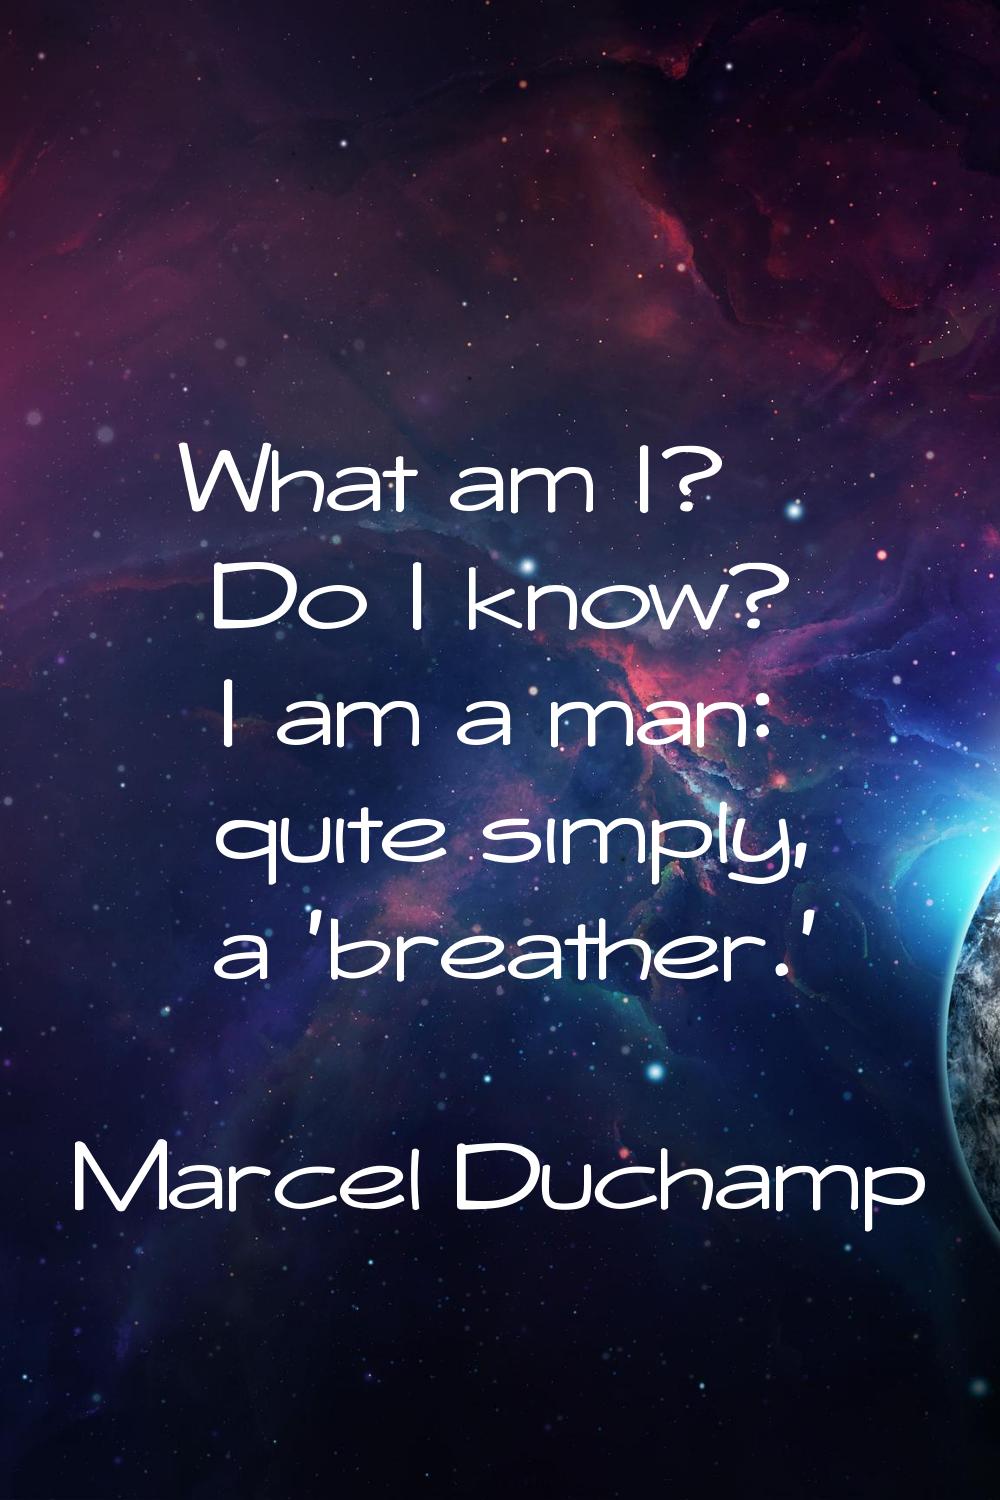 What am I? Do I know? I am a man: quite simply, a 'breather.'